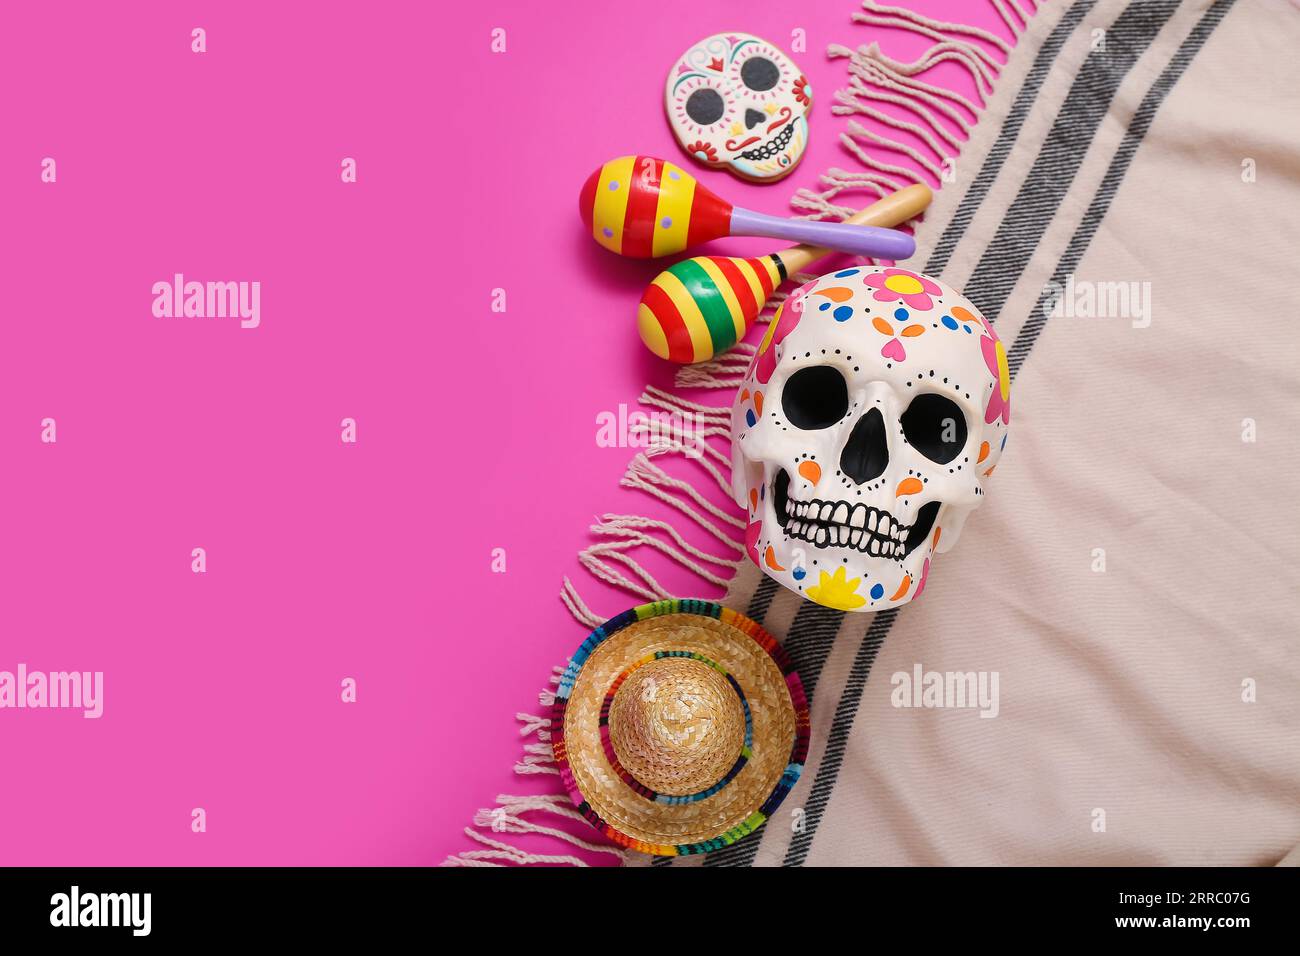 Crânes humains peints pour le jour des morts du Mexique (El Dia de Muertos) avec maracas, sombrero et poncho sur fond rose Banque D'Images